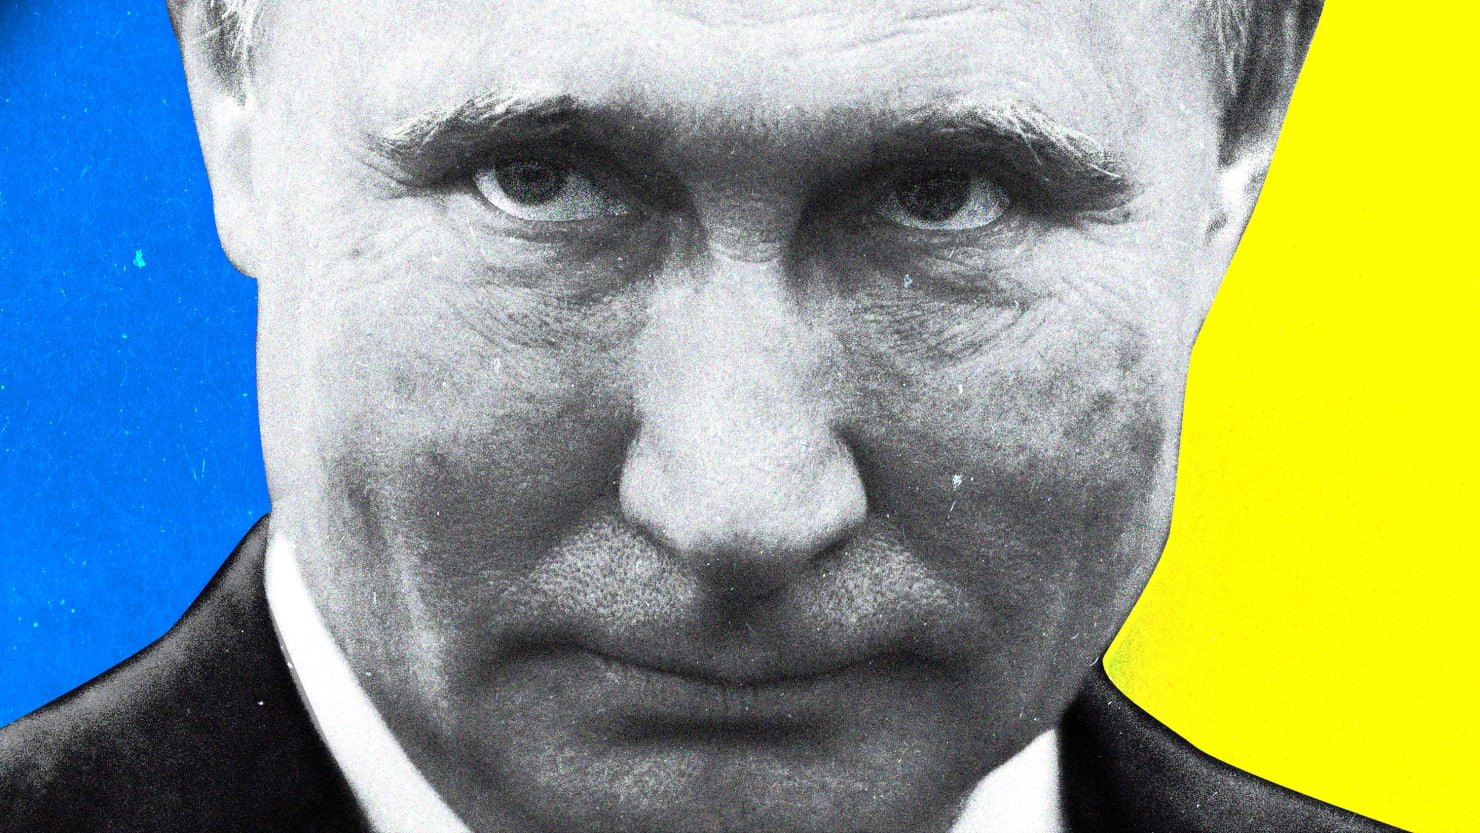 Putin perdiendo podría ser incluso más aterrador que él ganando